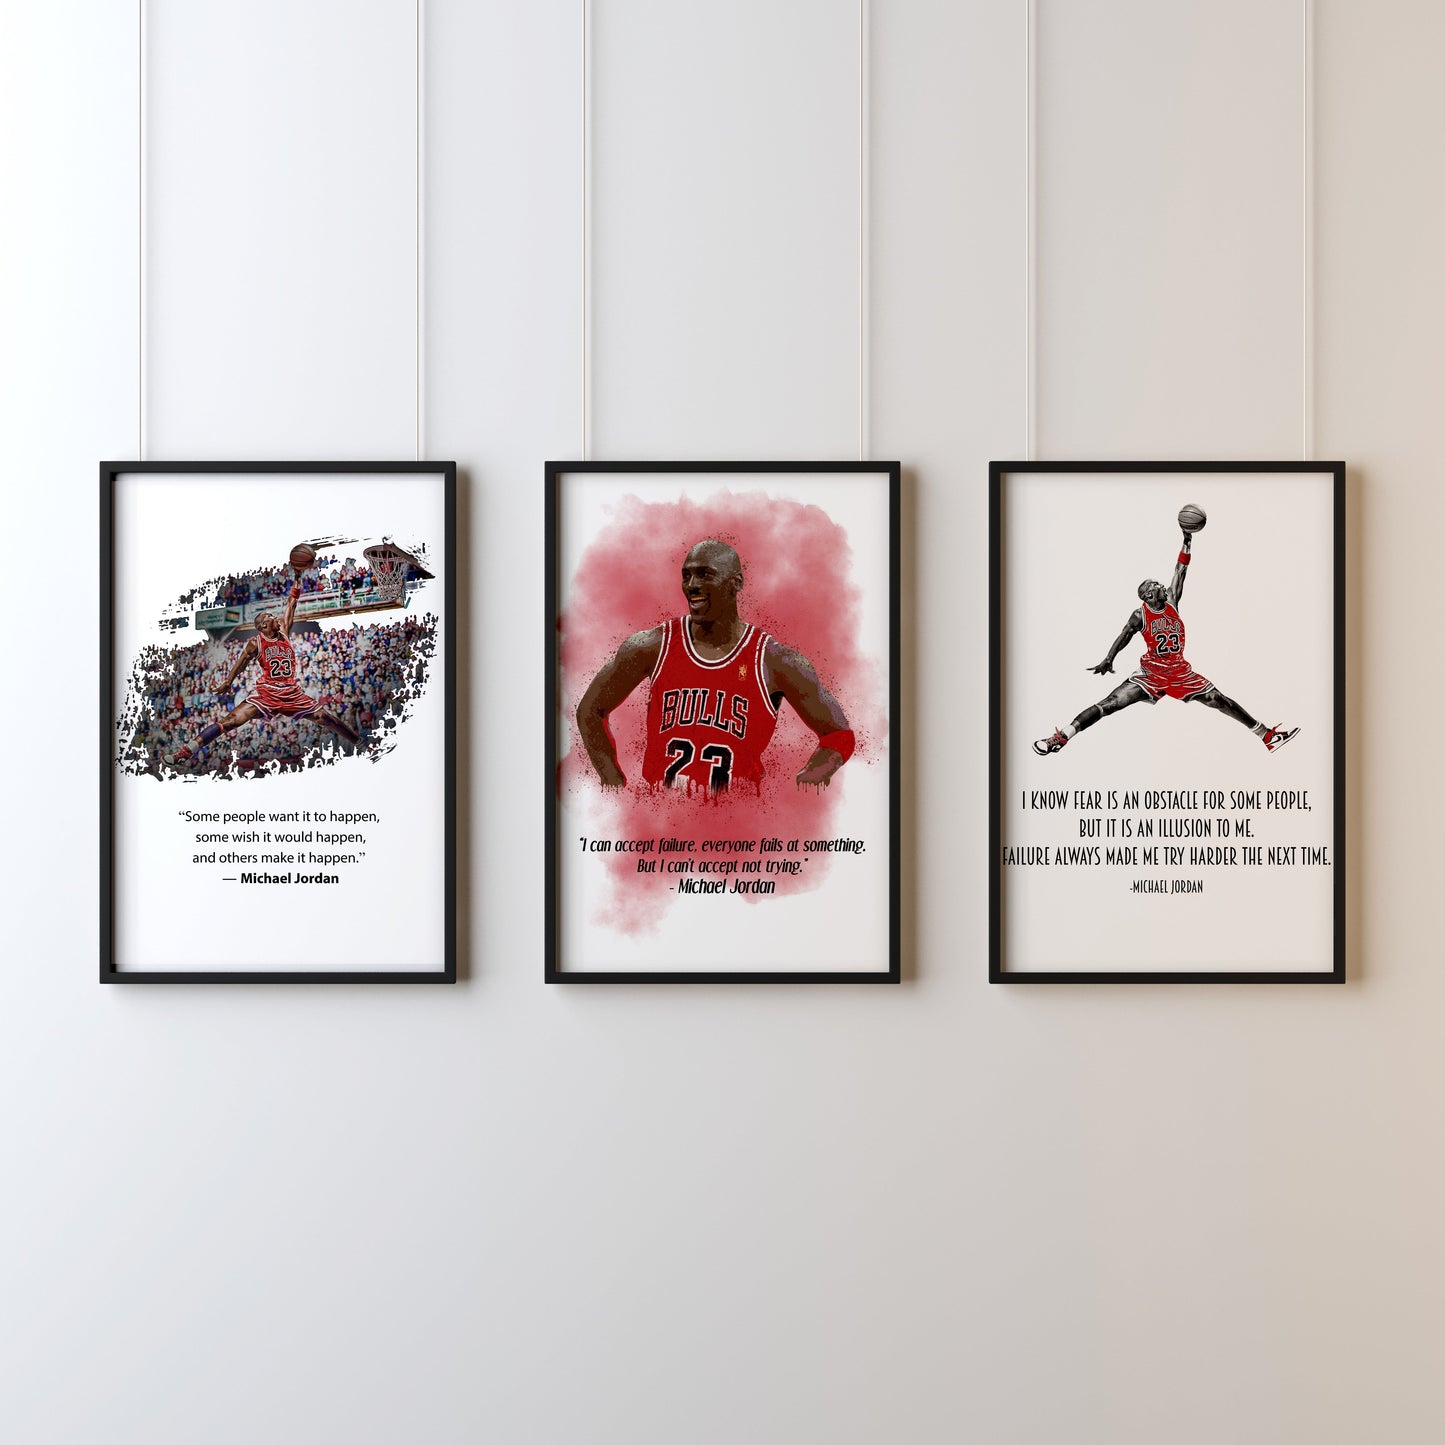 Michael Jordan set of 3 prints